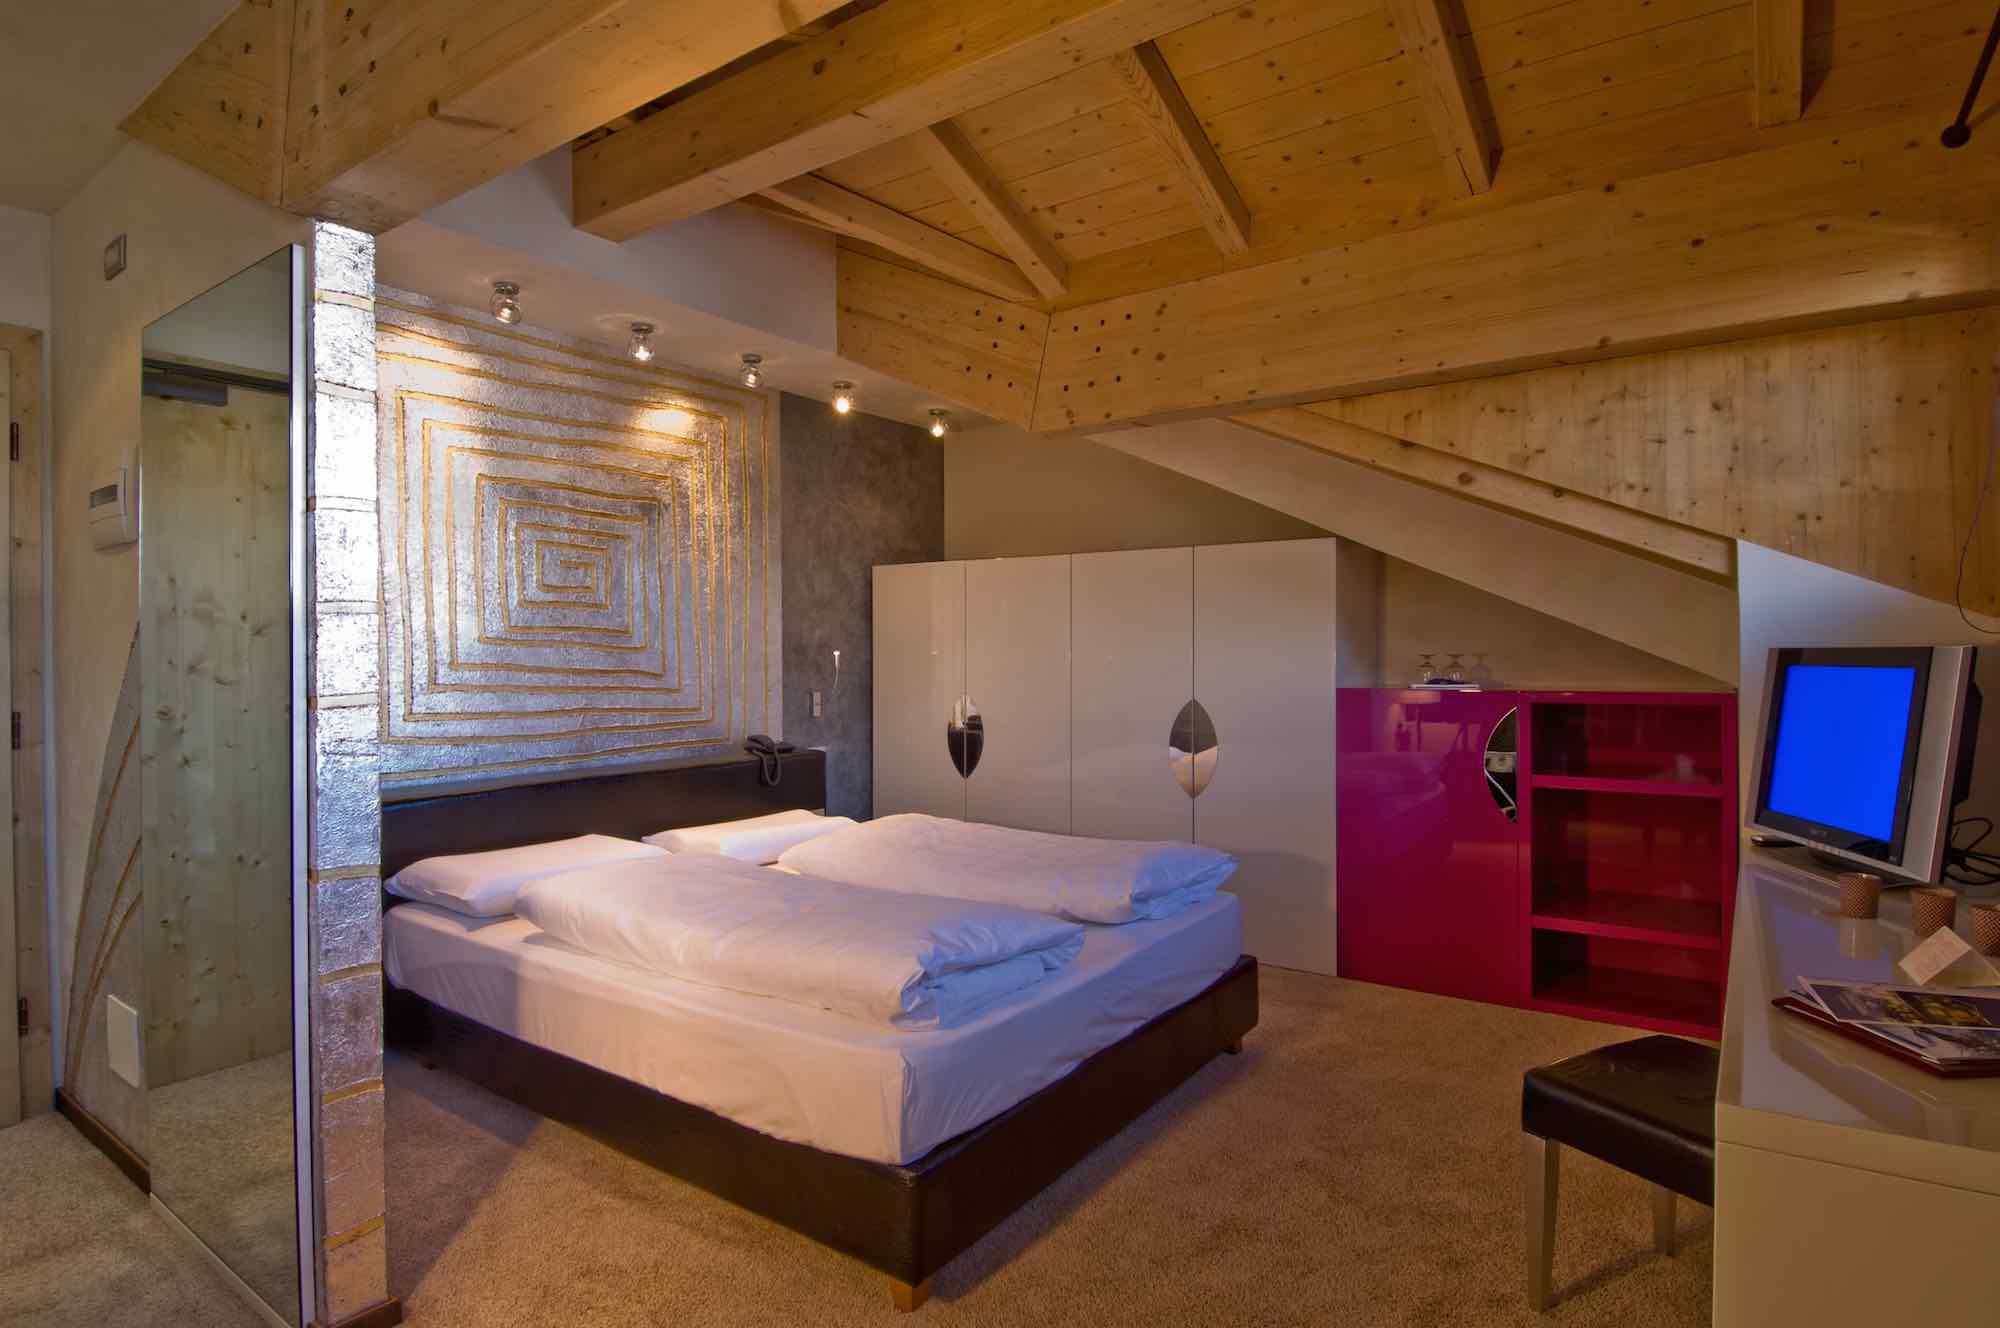 Hotel Concordia - Via Plan N.114, Livigno 23041 - Room - Audrey Hepburn Suite 1